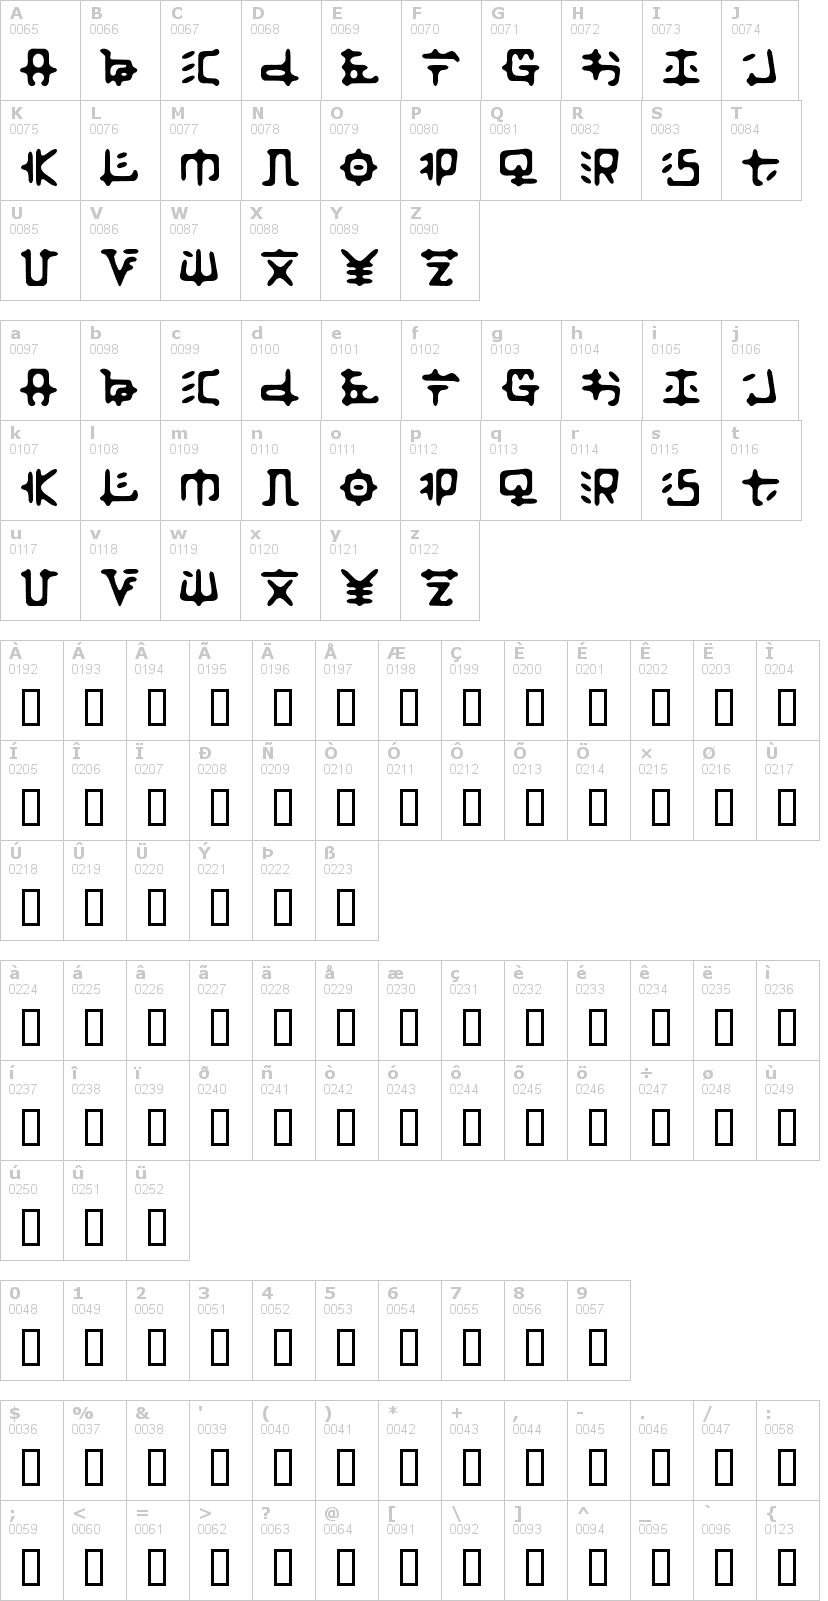 Lettere dell'alfabeto del font zaibatsu con le quali è possibile realizzare adesivi prespaziati